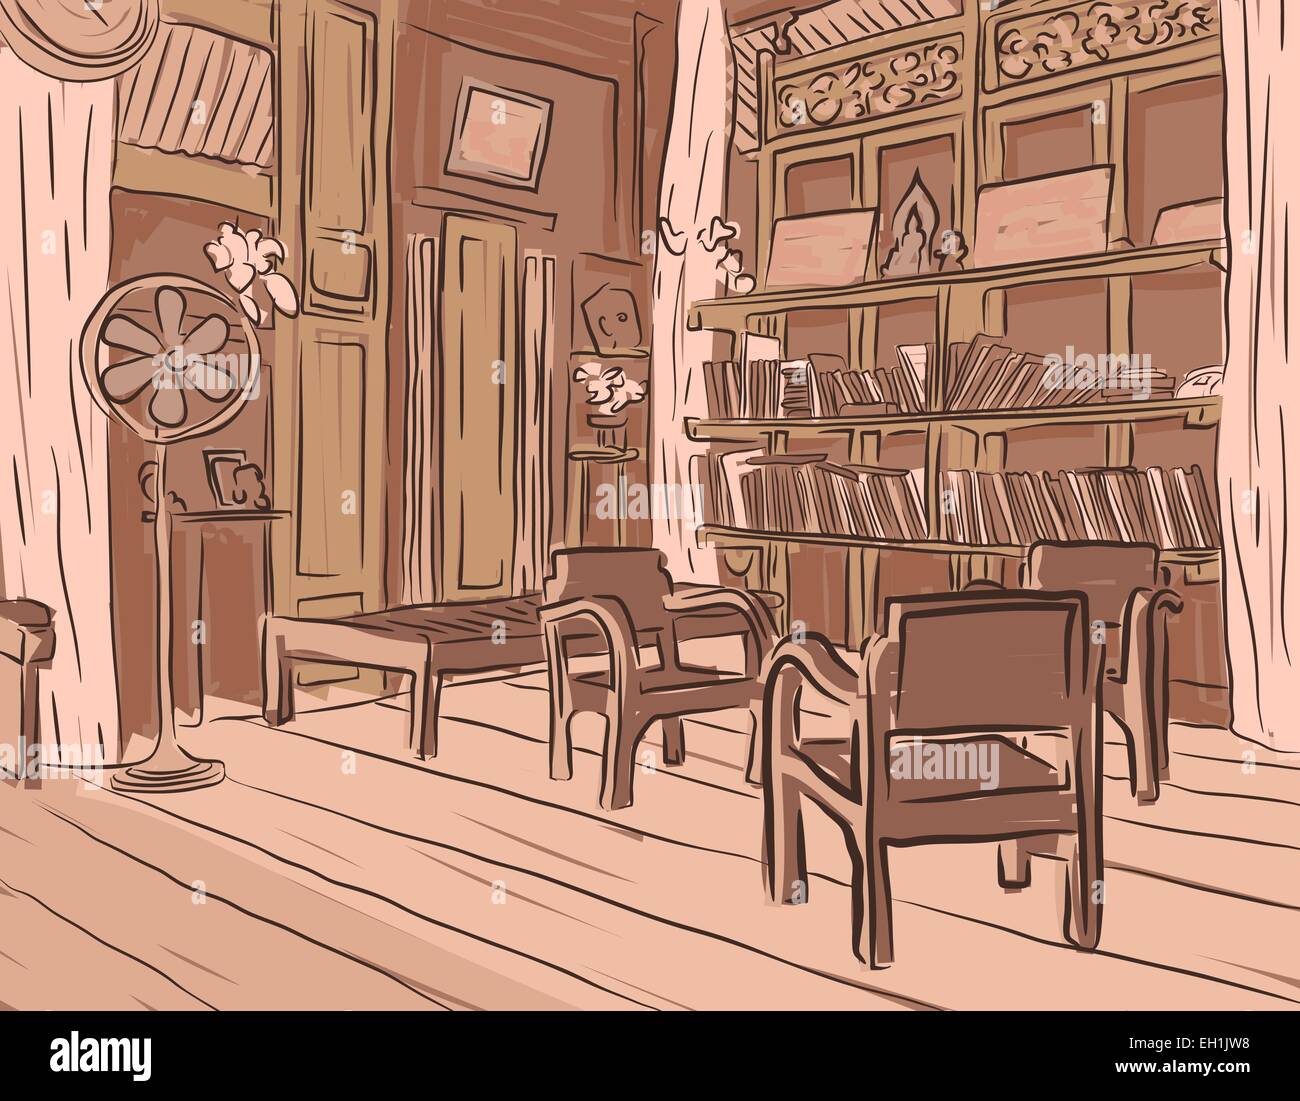 Vettoriale modificabile schizzo marrone di un olden sala lettura o salotto con mobili in legno Illustrazione Vettoriale